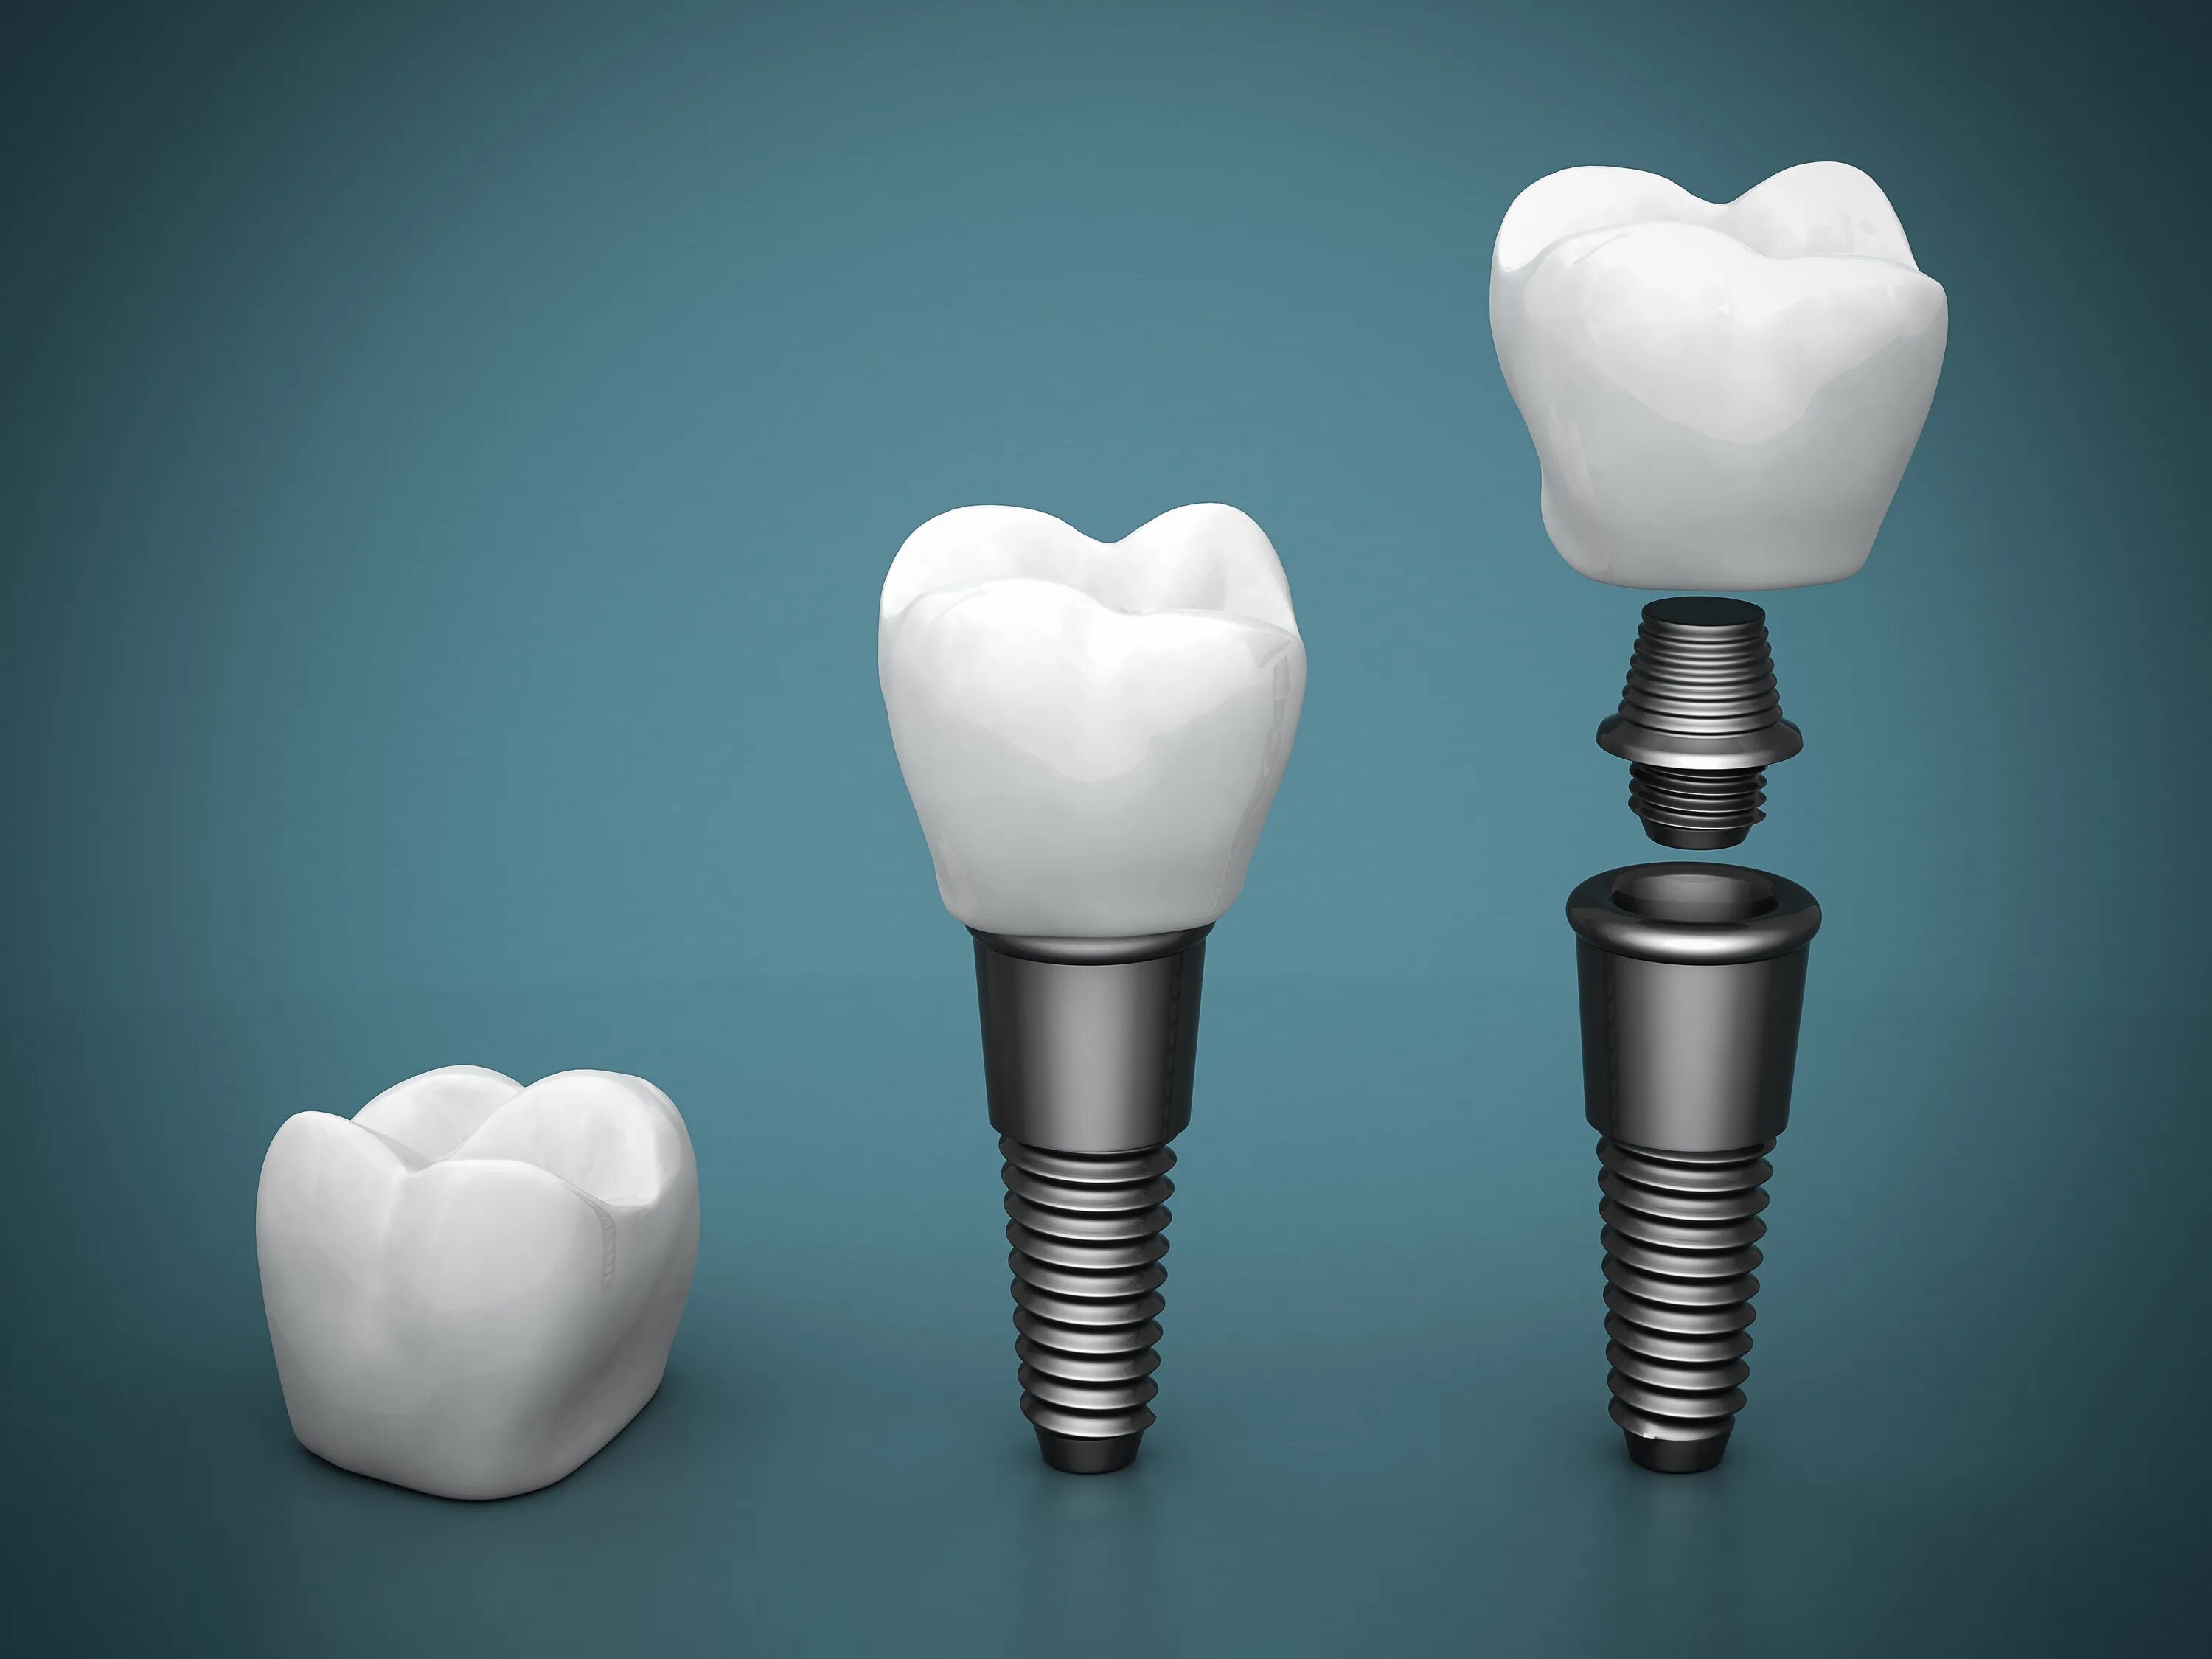 Имплантация зубов Dental implan. Inno импланты. Имплантат абатмент коронка. Имплантация Osstem и Astra-Tech.